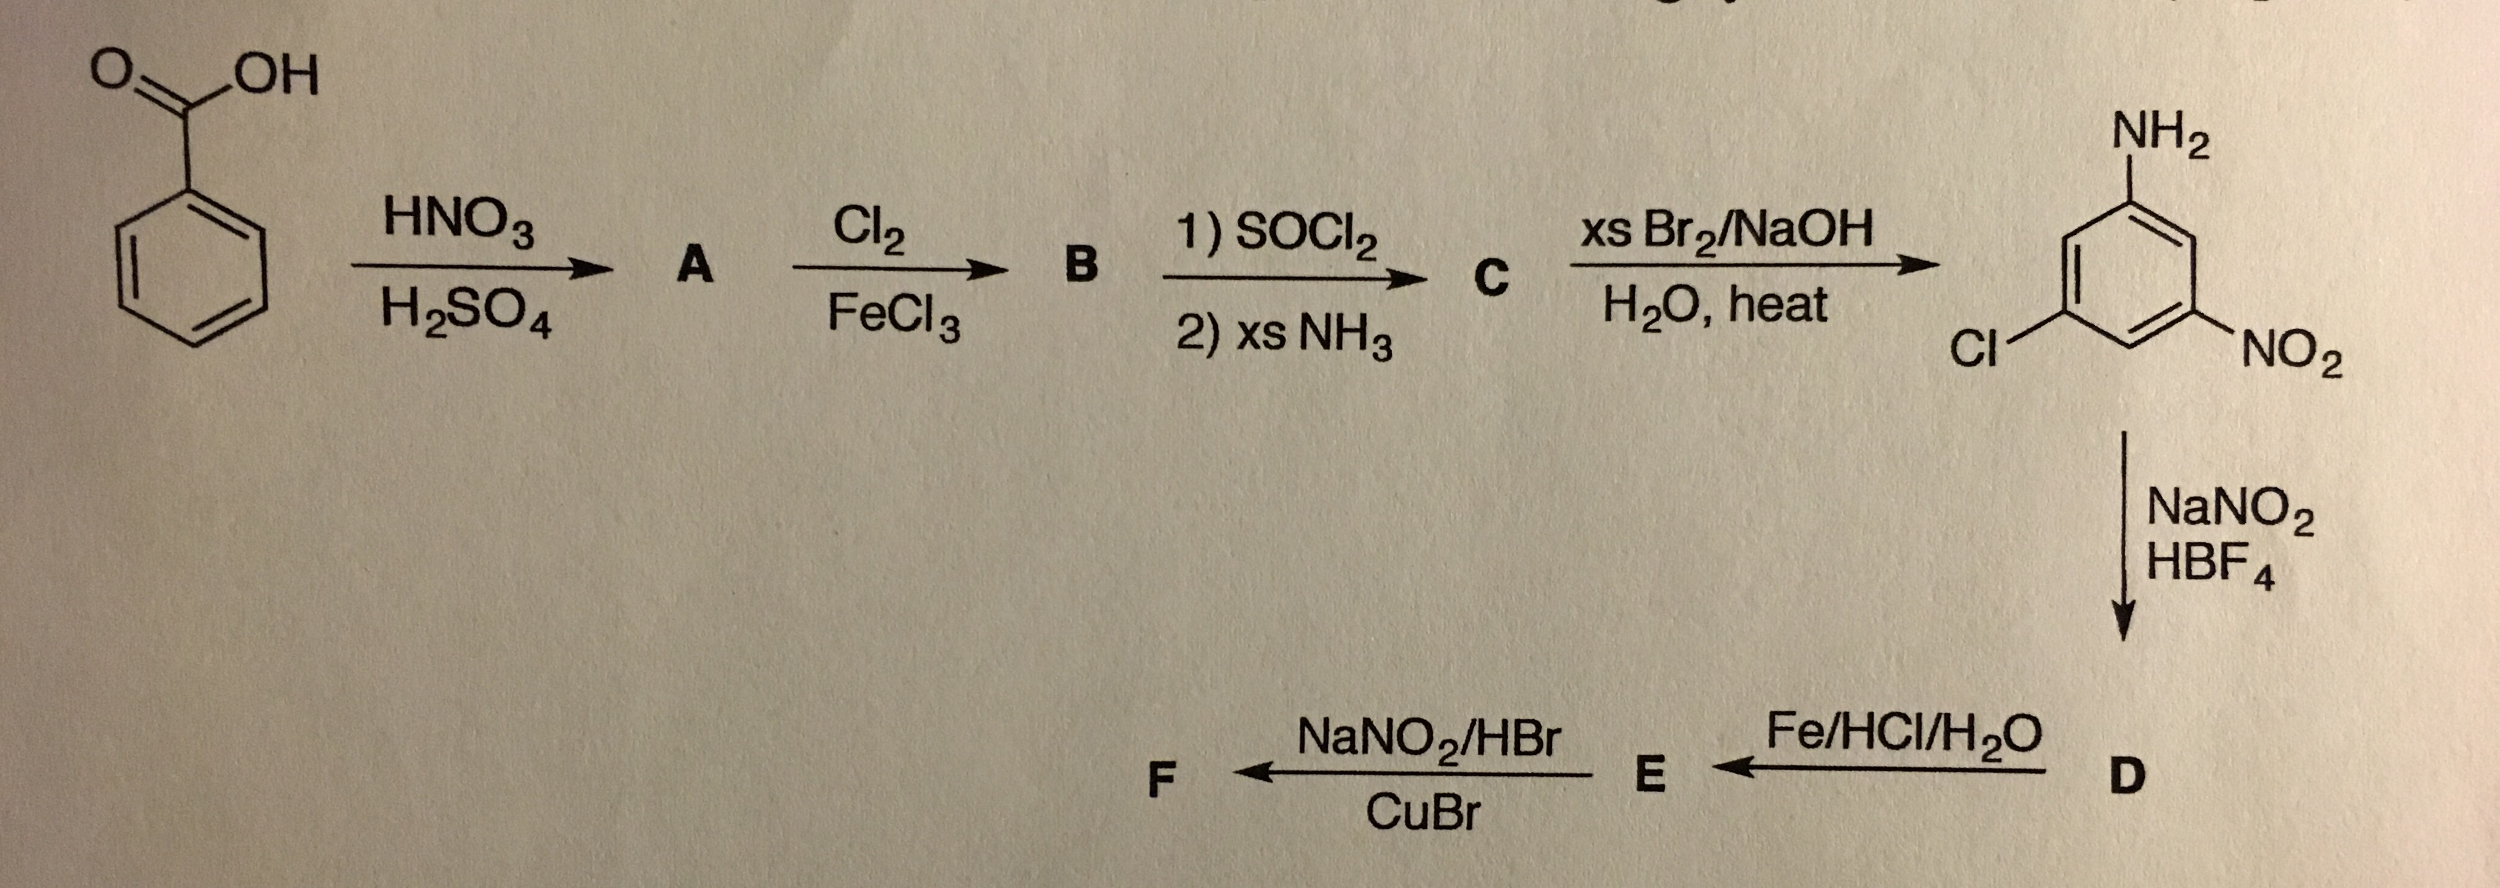 Кон br2. Ch3nh3br + hno2. Бензол hno2. Бензол hno3 h2so4. Метилбензол + 2cl2 al2o3.